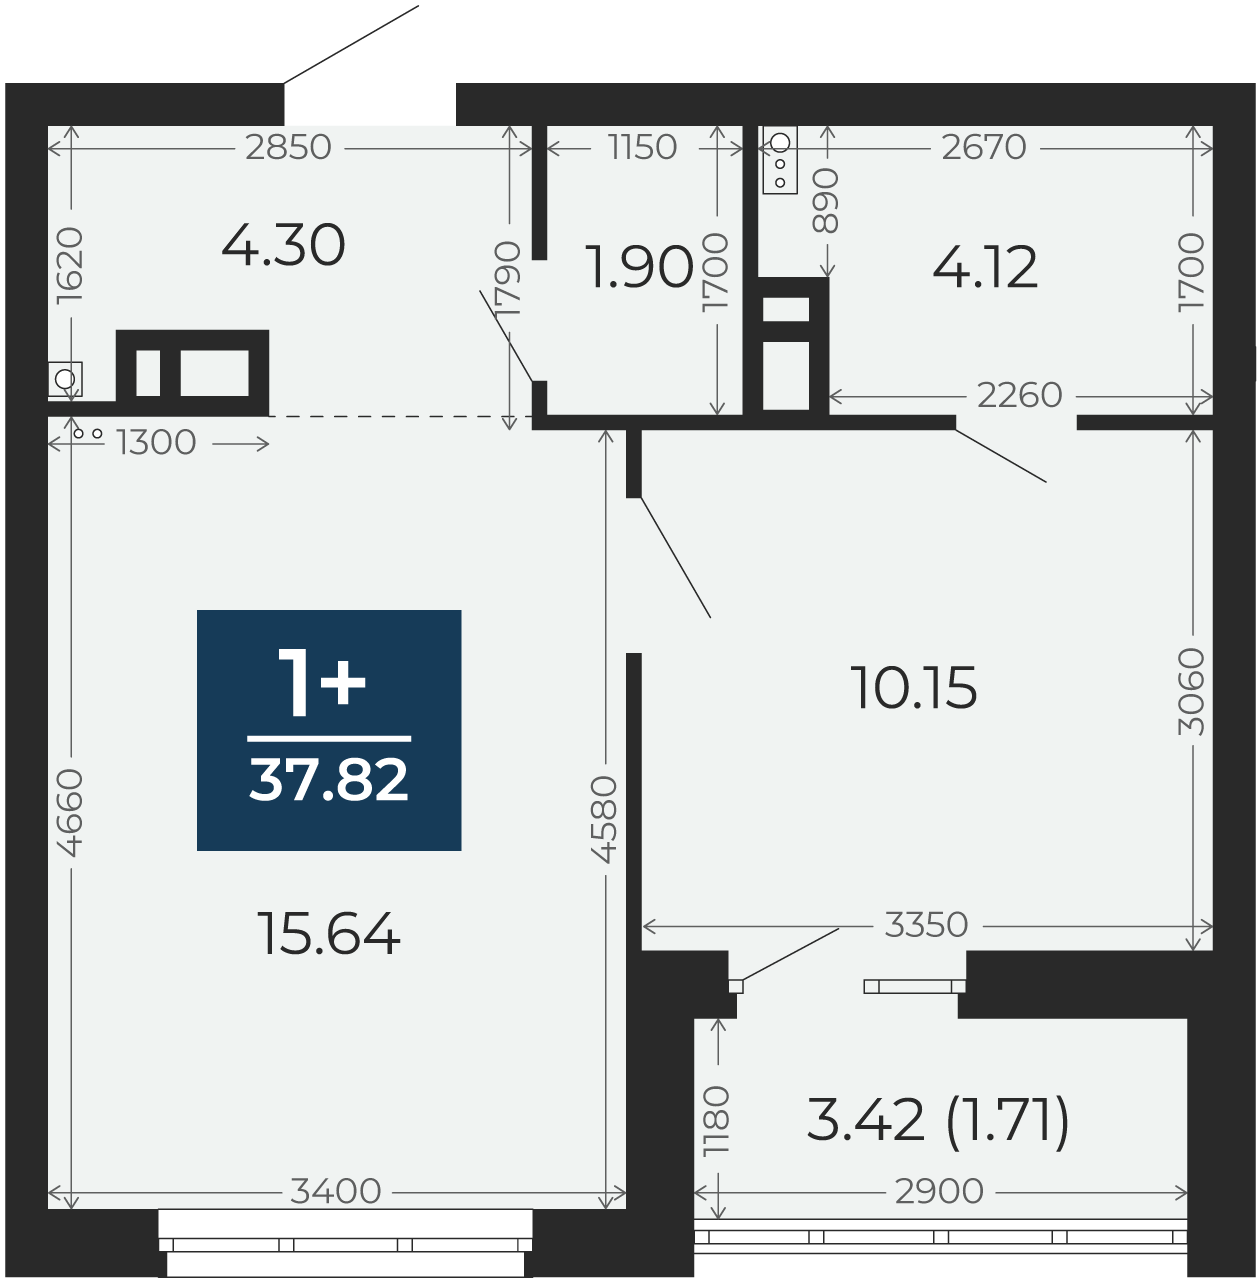 Квартира № 17, 1-комнатная, 37.82 кв. м, 4 этаж